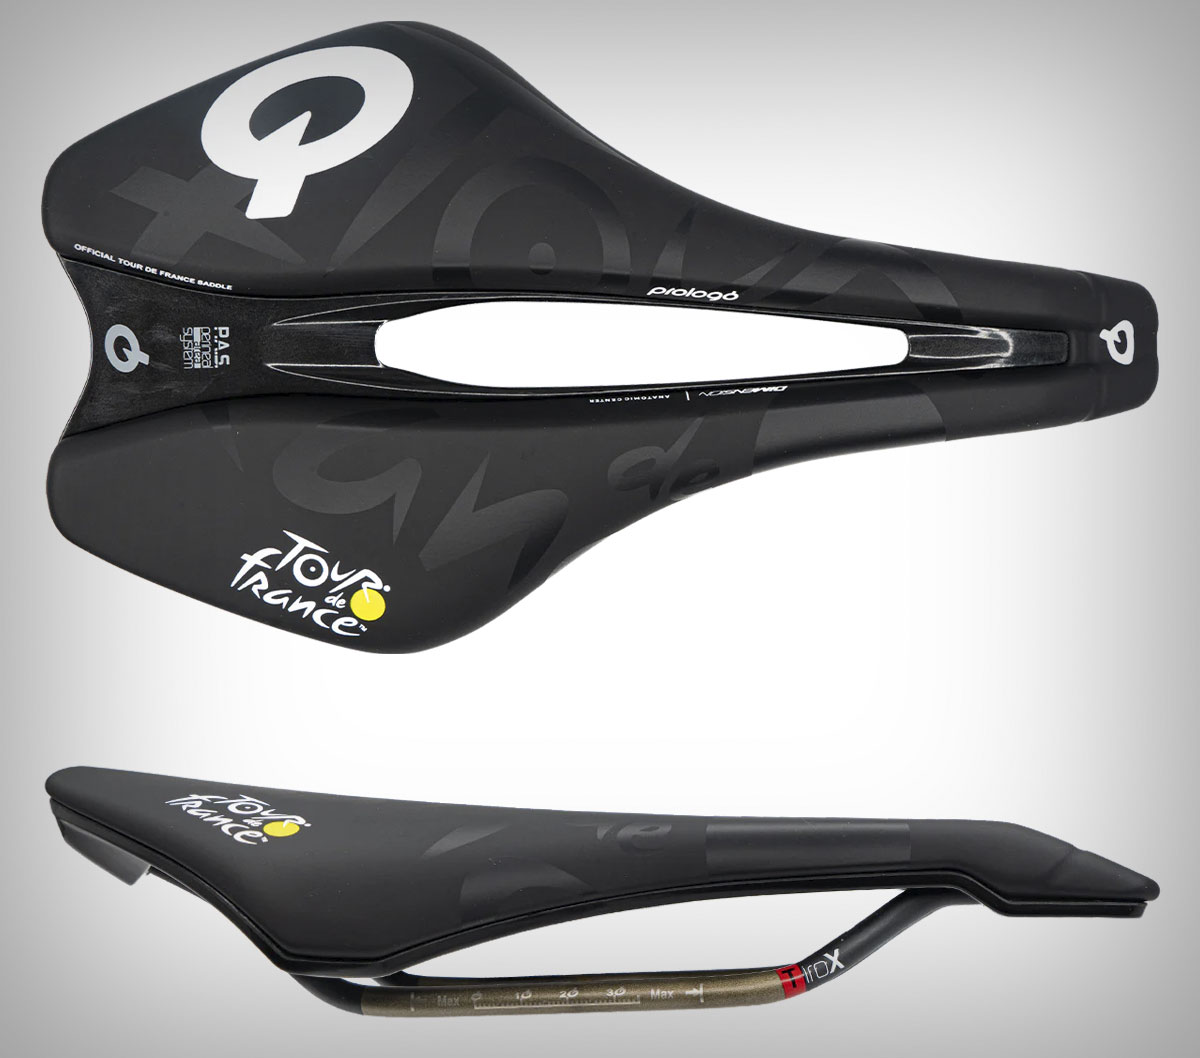 El Tour de Francia ya tiene sillín oficial: el Prologo Dimension 143, uno de los más vendidos de la marca